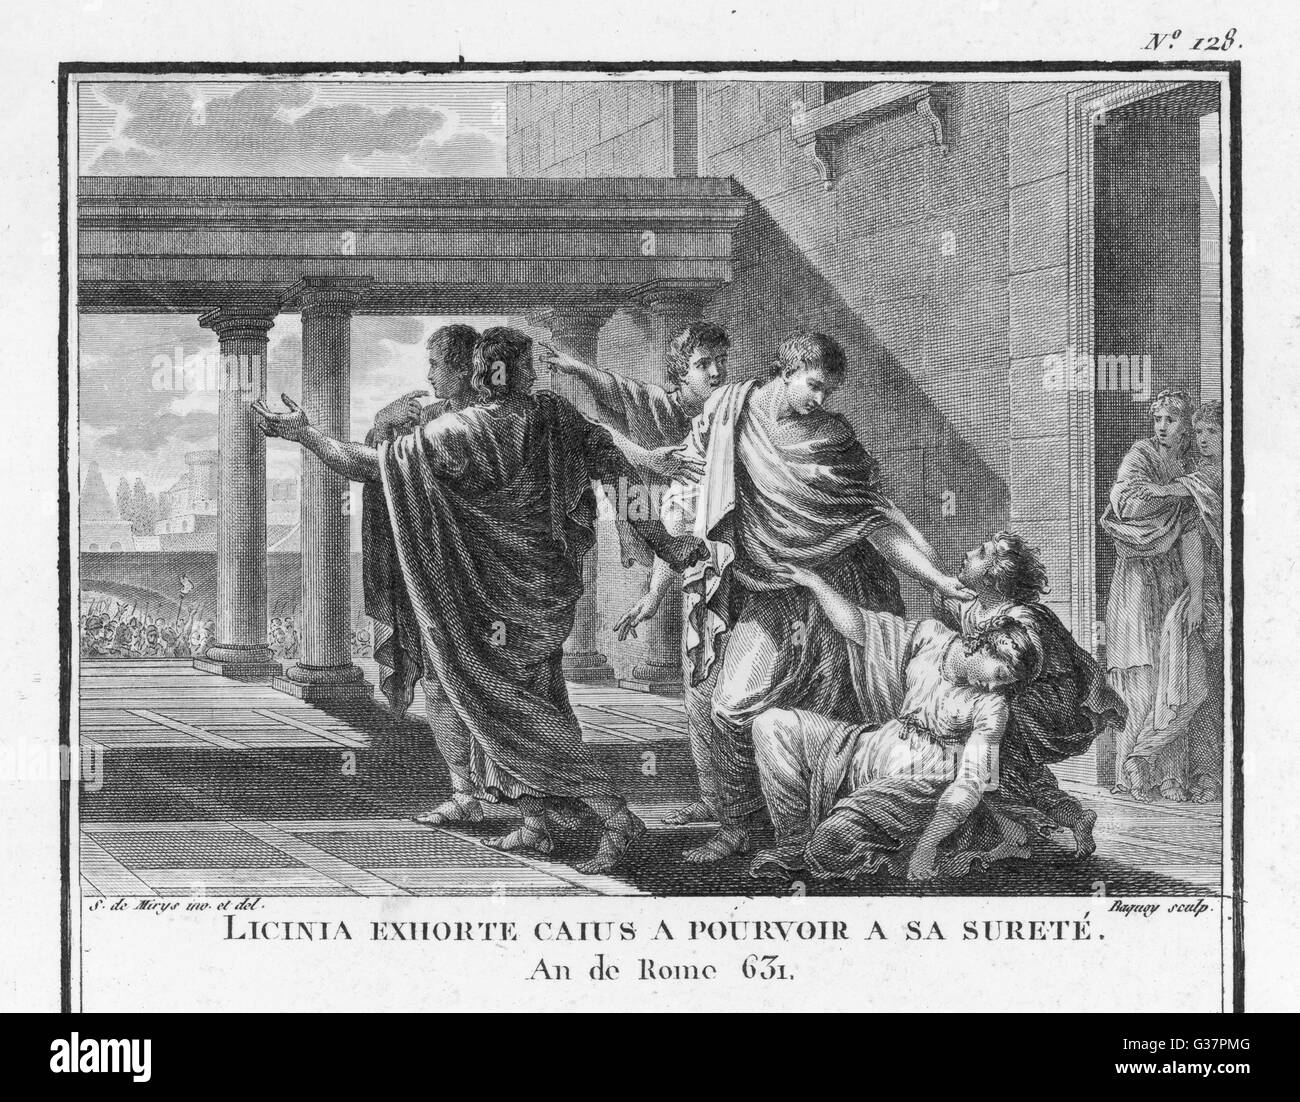 Gefangen in dem blutigen Konflikt zwischen dem Senat und das Volk, Tribüne der Leute Caius Gracchus ist von seiner Frau Licinia Datum fliehen bat: 121 v. Chr. Stockfoto